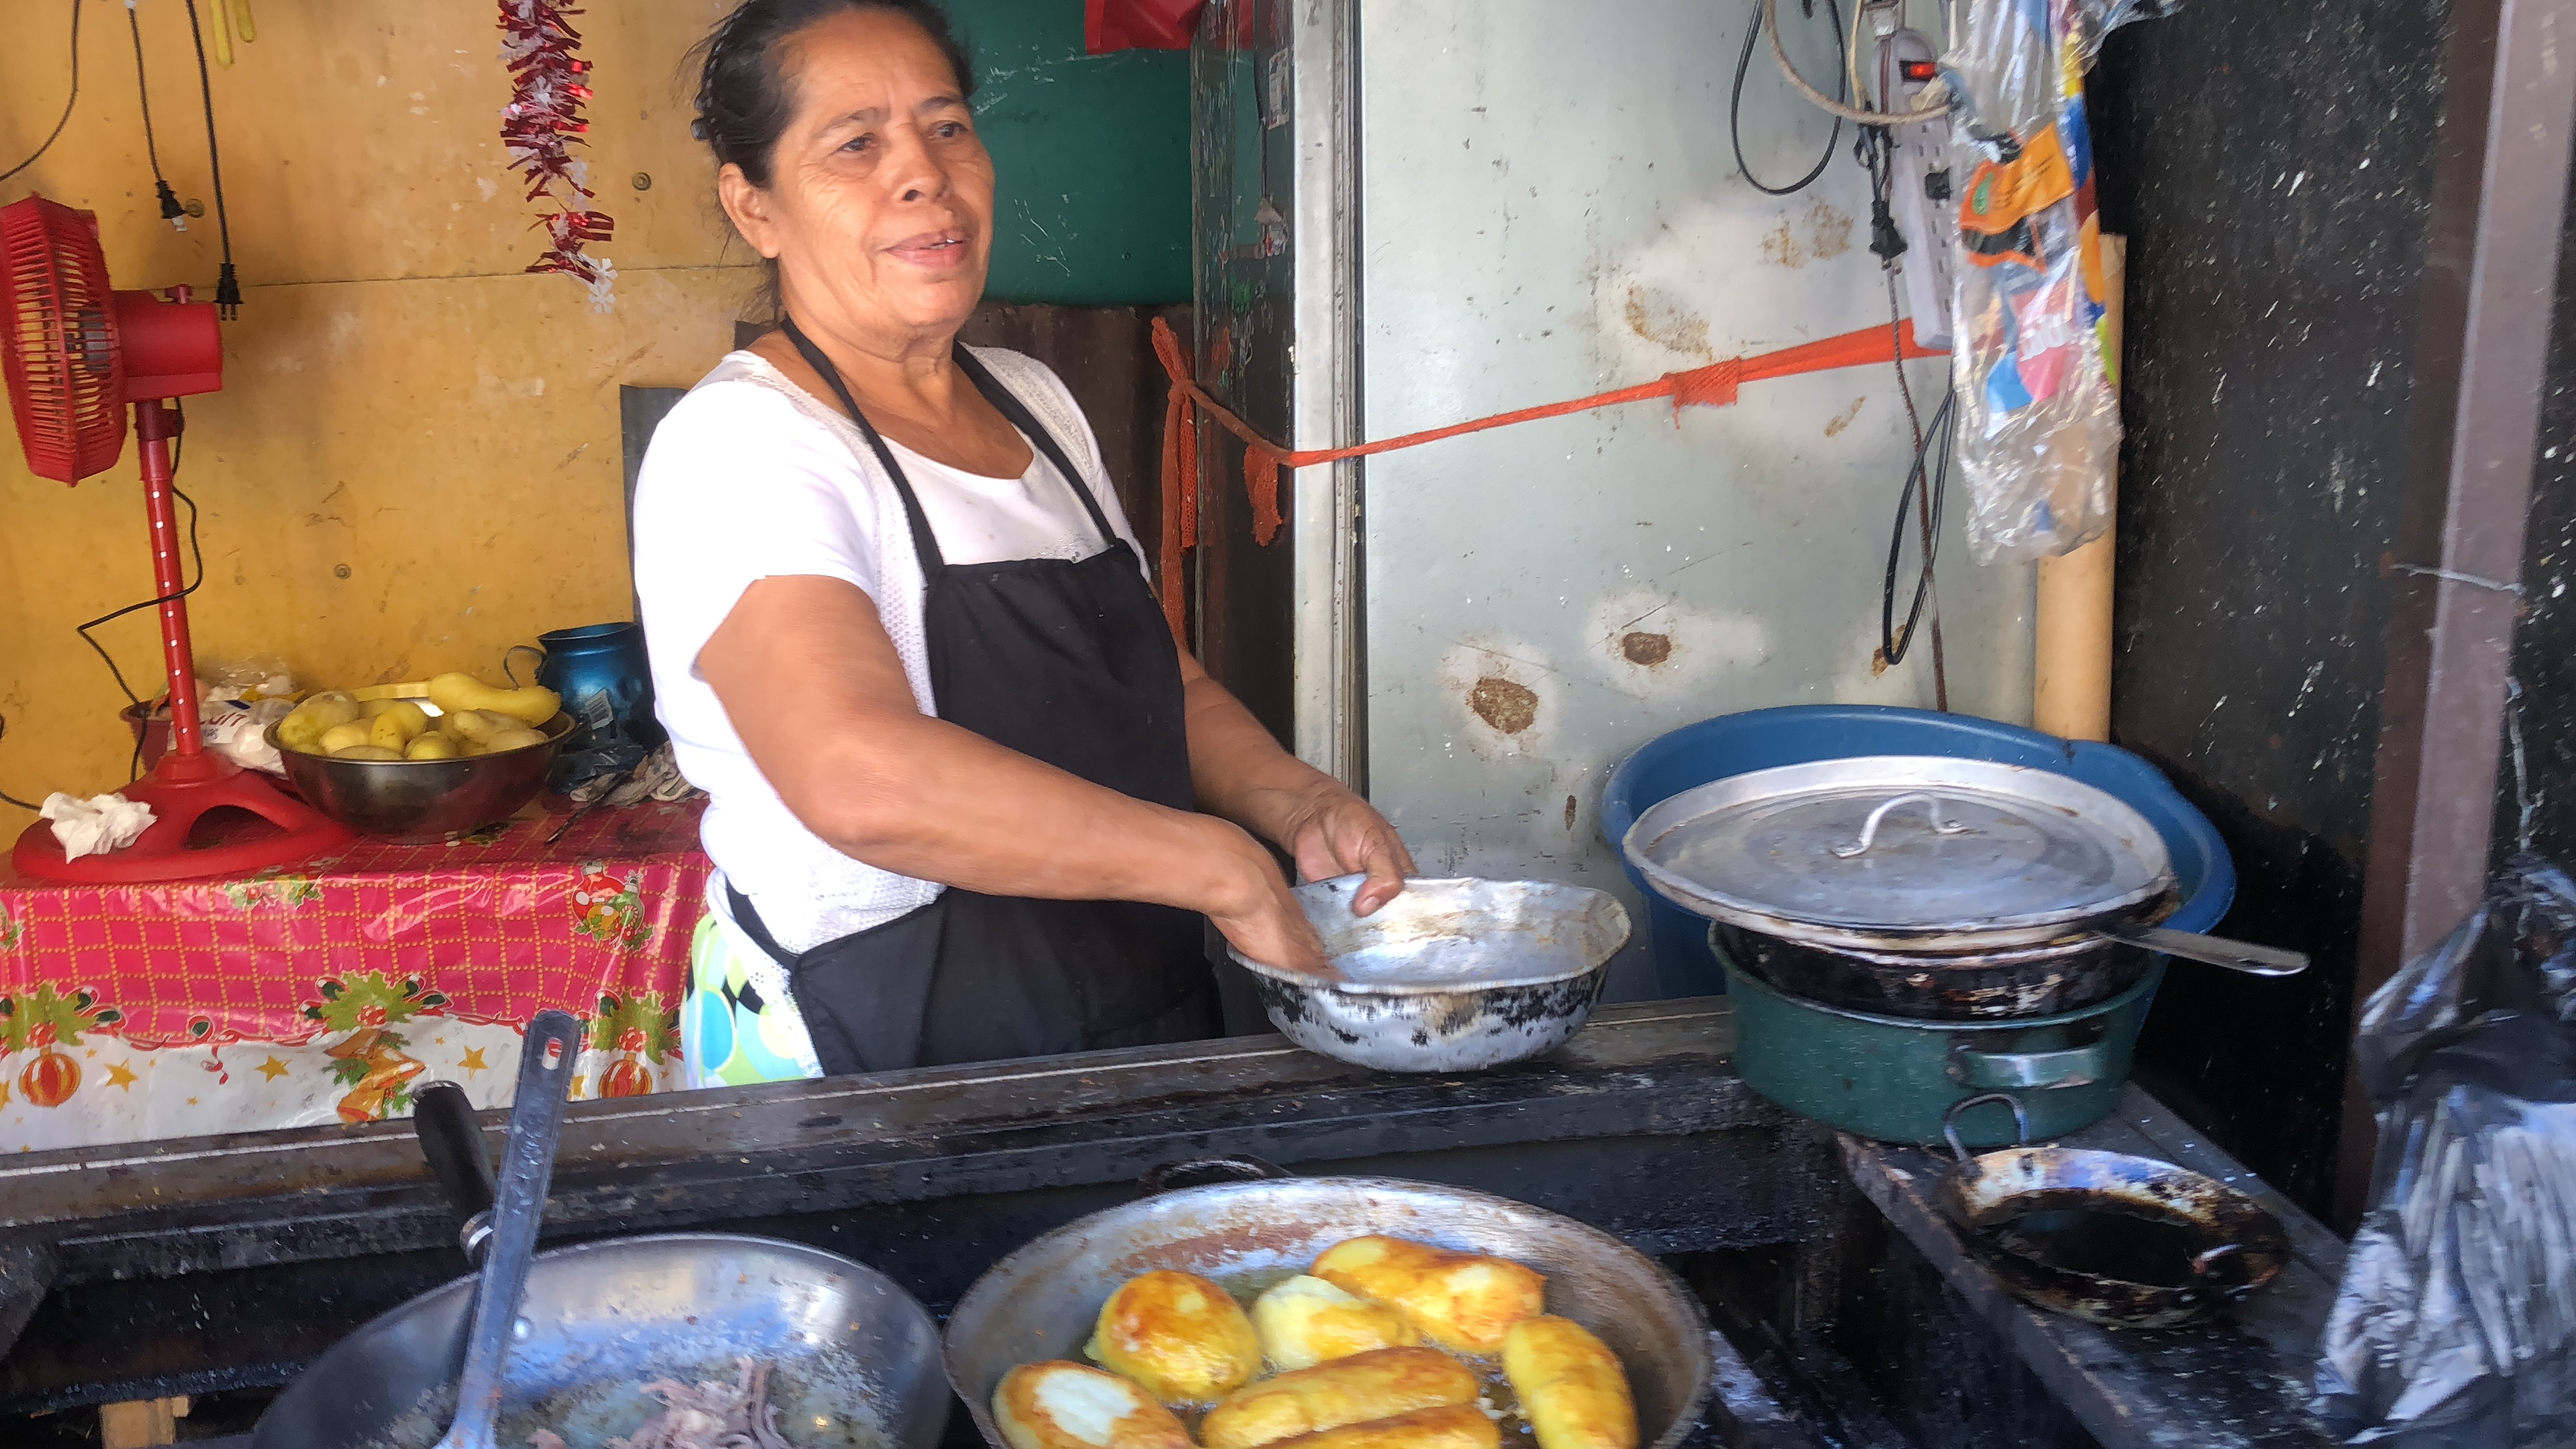 Street market in El Salvador